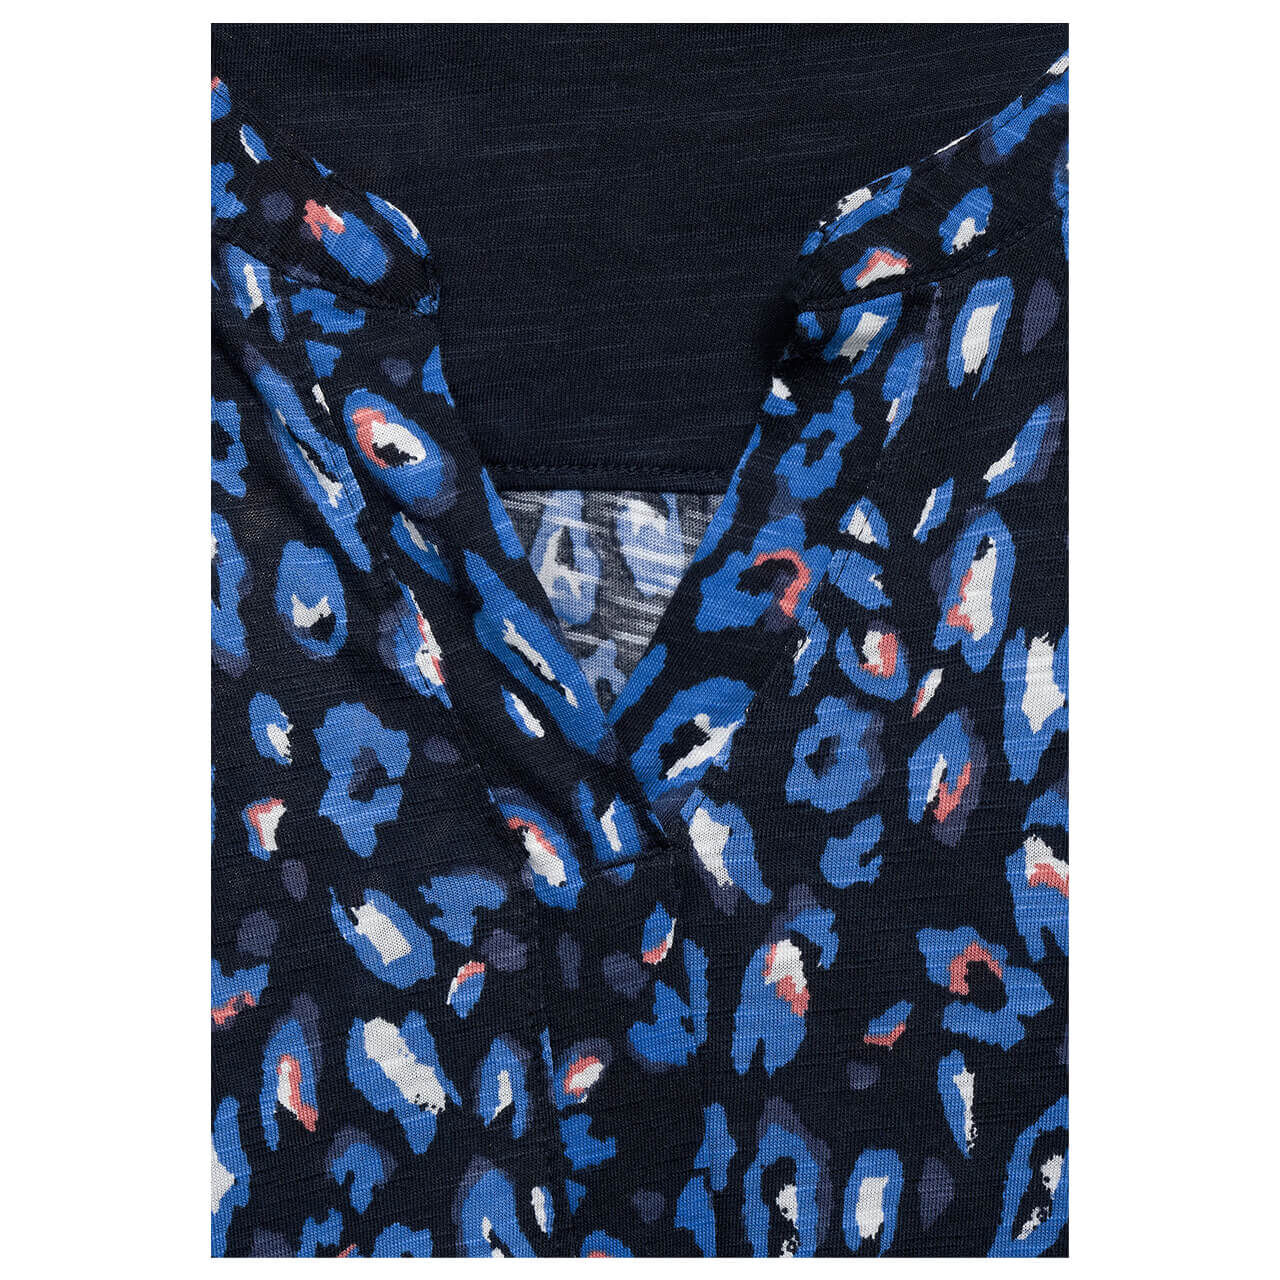 Cecil Leo Tunic Langarm Shirt für Damen in Dunkelblau mit Print, FarbNr.: 30128